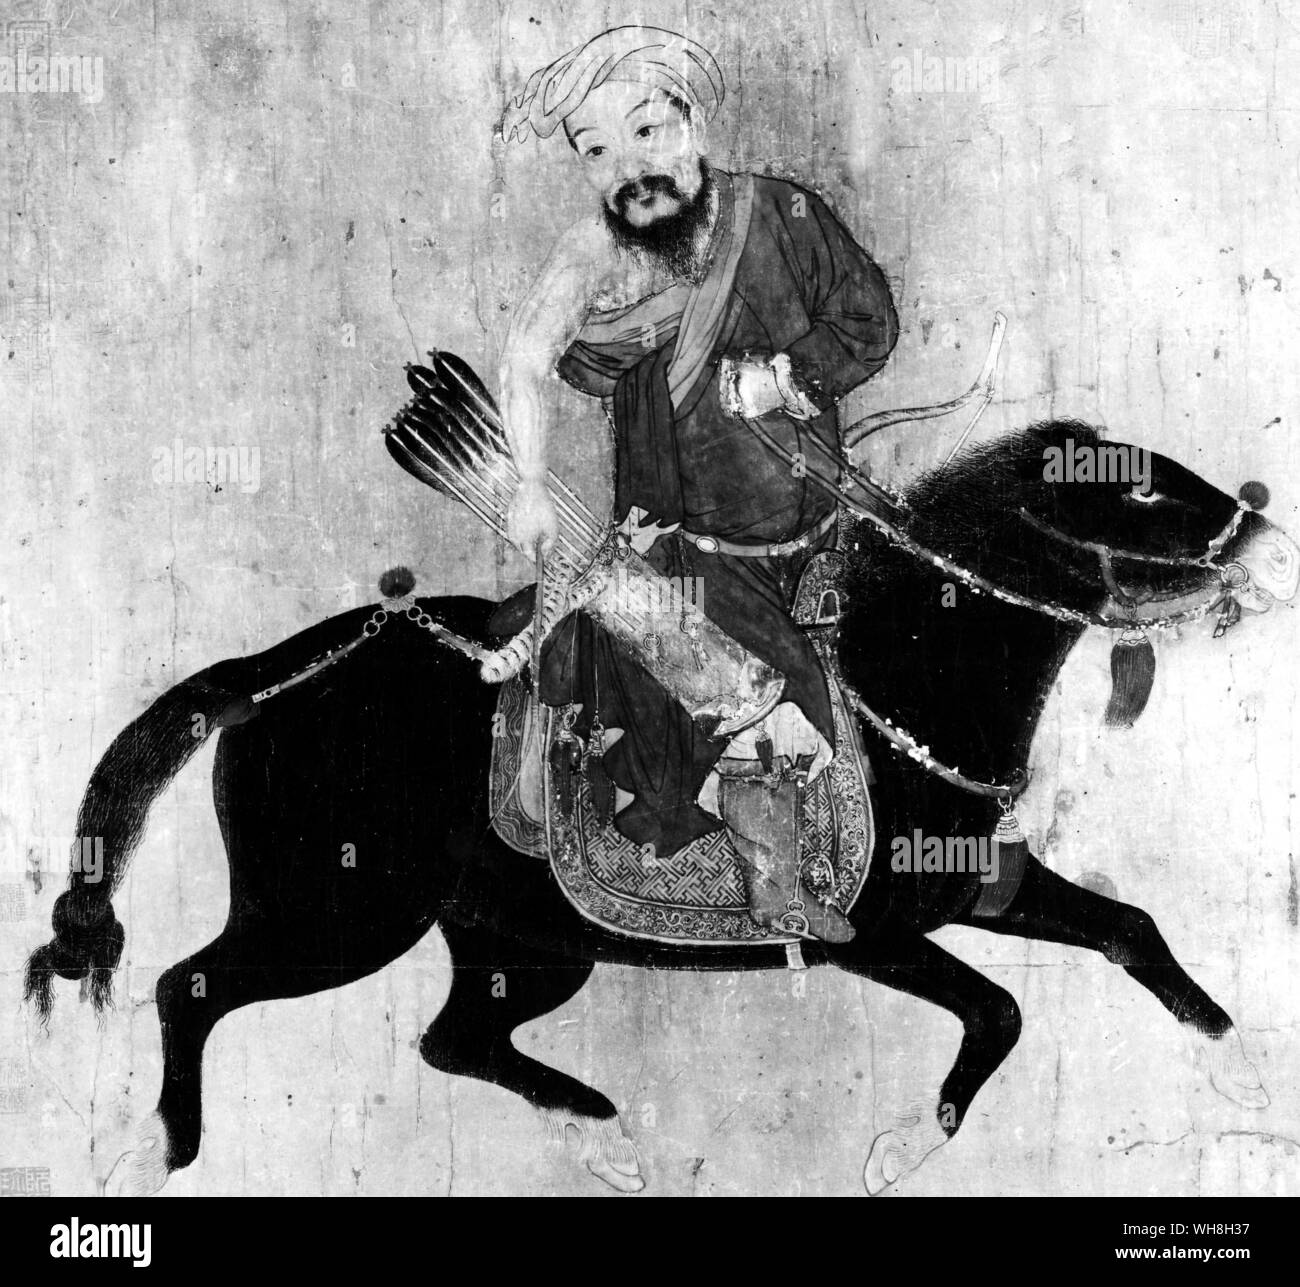 Dessin Chinois d'un archer à cheval mongol, 15ème-16ème siècle. Encyclopédie du cheval à partir de la page 225. Banque D'Images